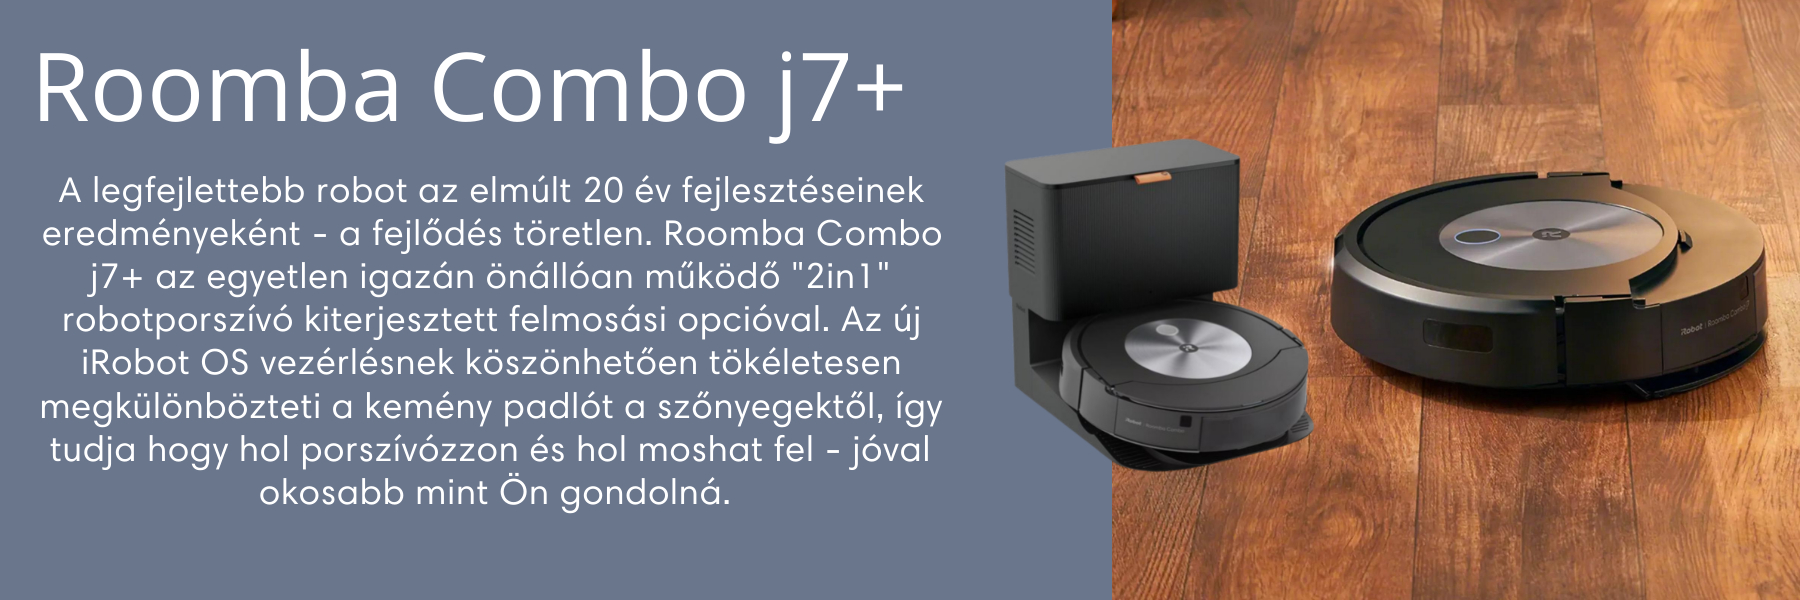 A legfejlettebb robot az elmúlt 20 év fejlesztéseinek eredményeként - a fejlődés töretlen. Roomba Combo j7+ az egyetlen igazán önállóan működő 